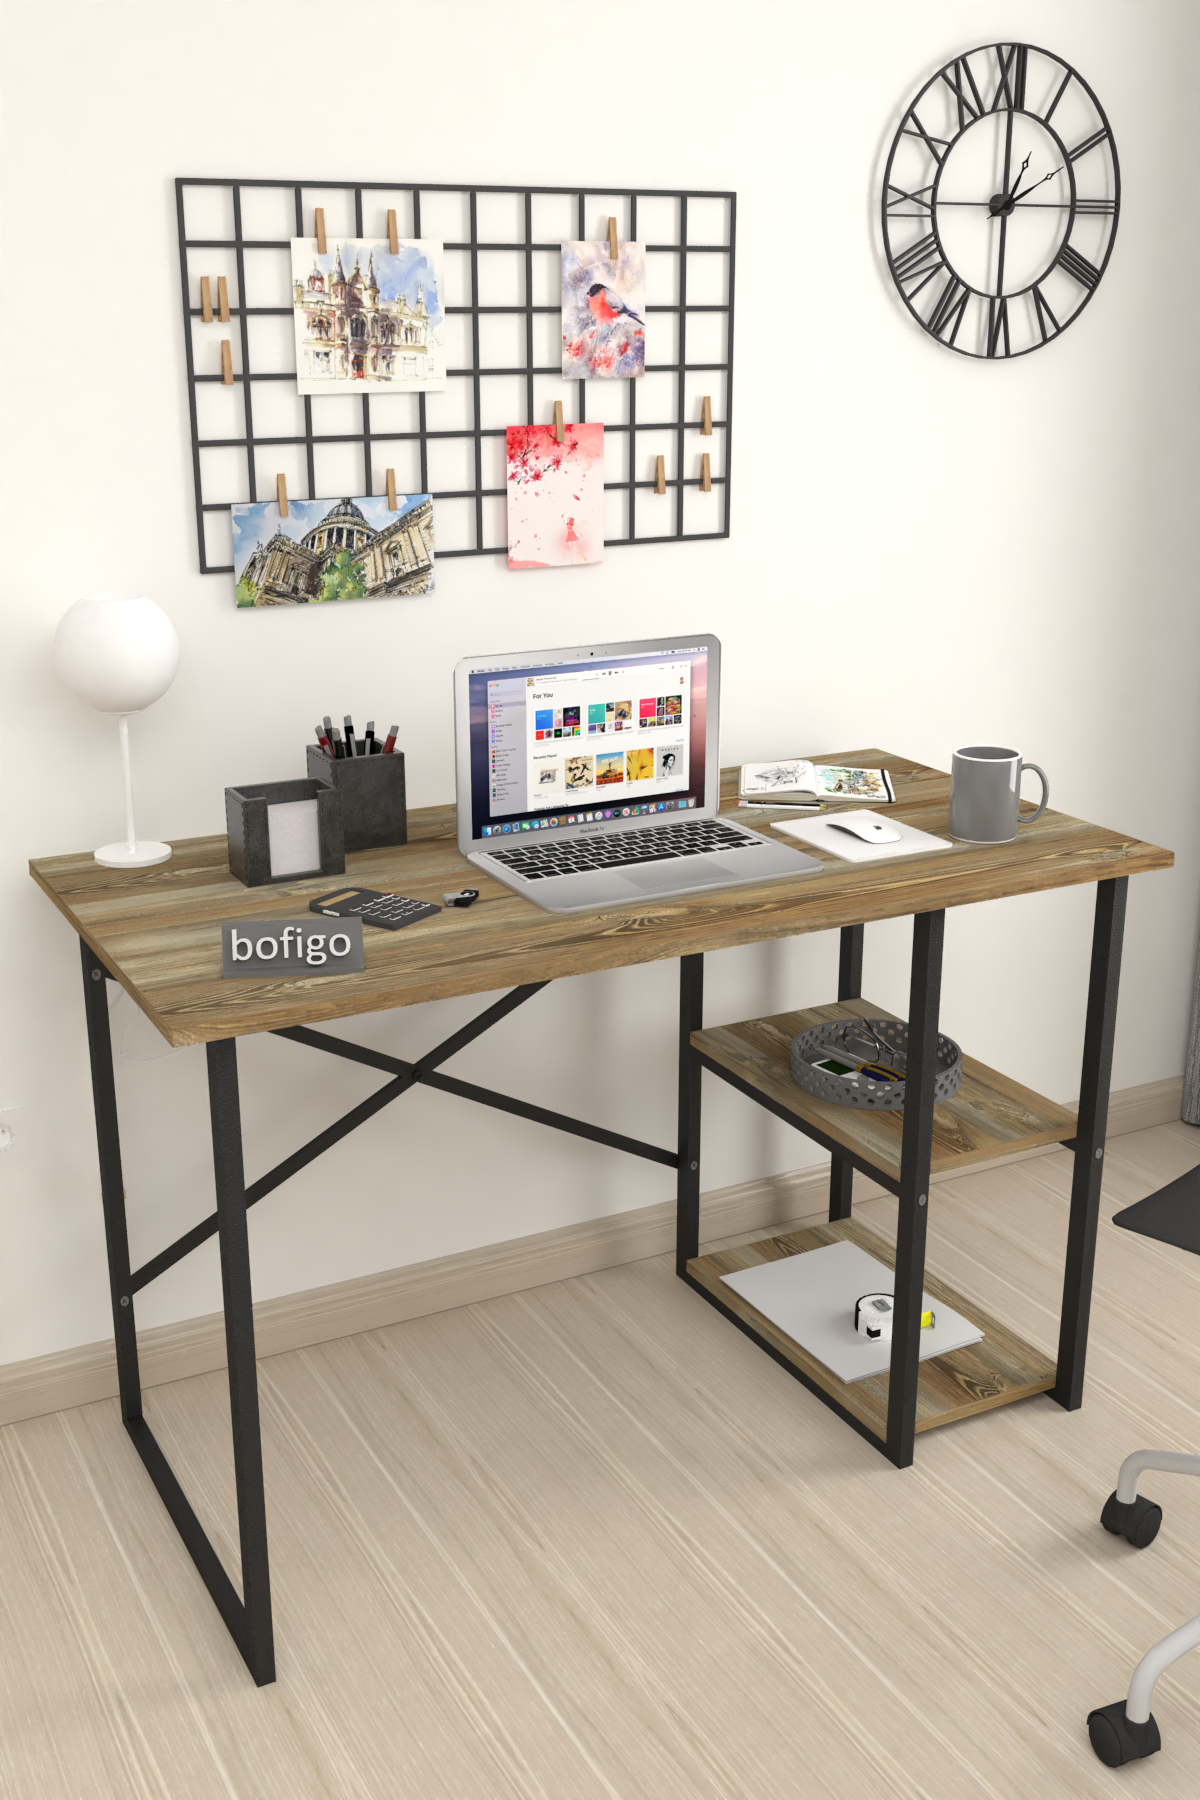 Bofigo 2 Shelf Study Desk 60x120 cm  Patik